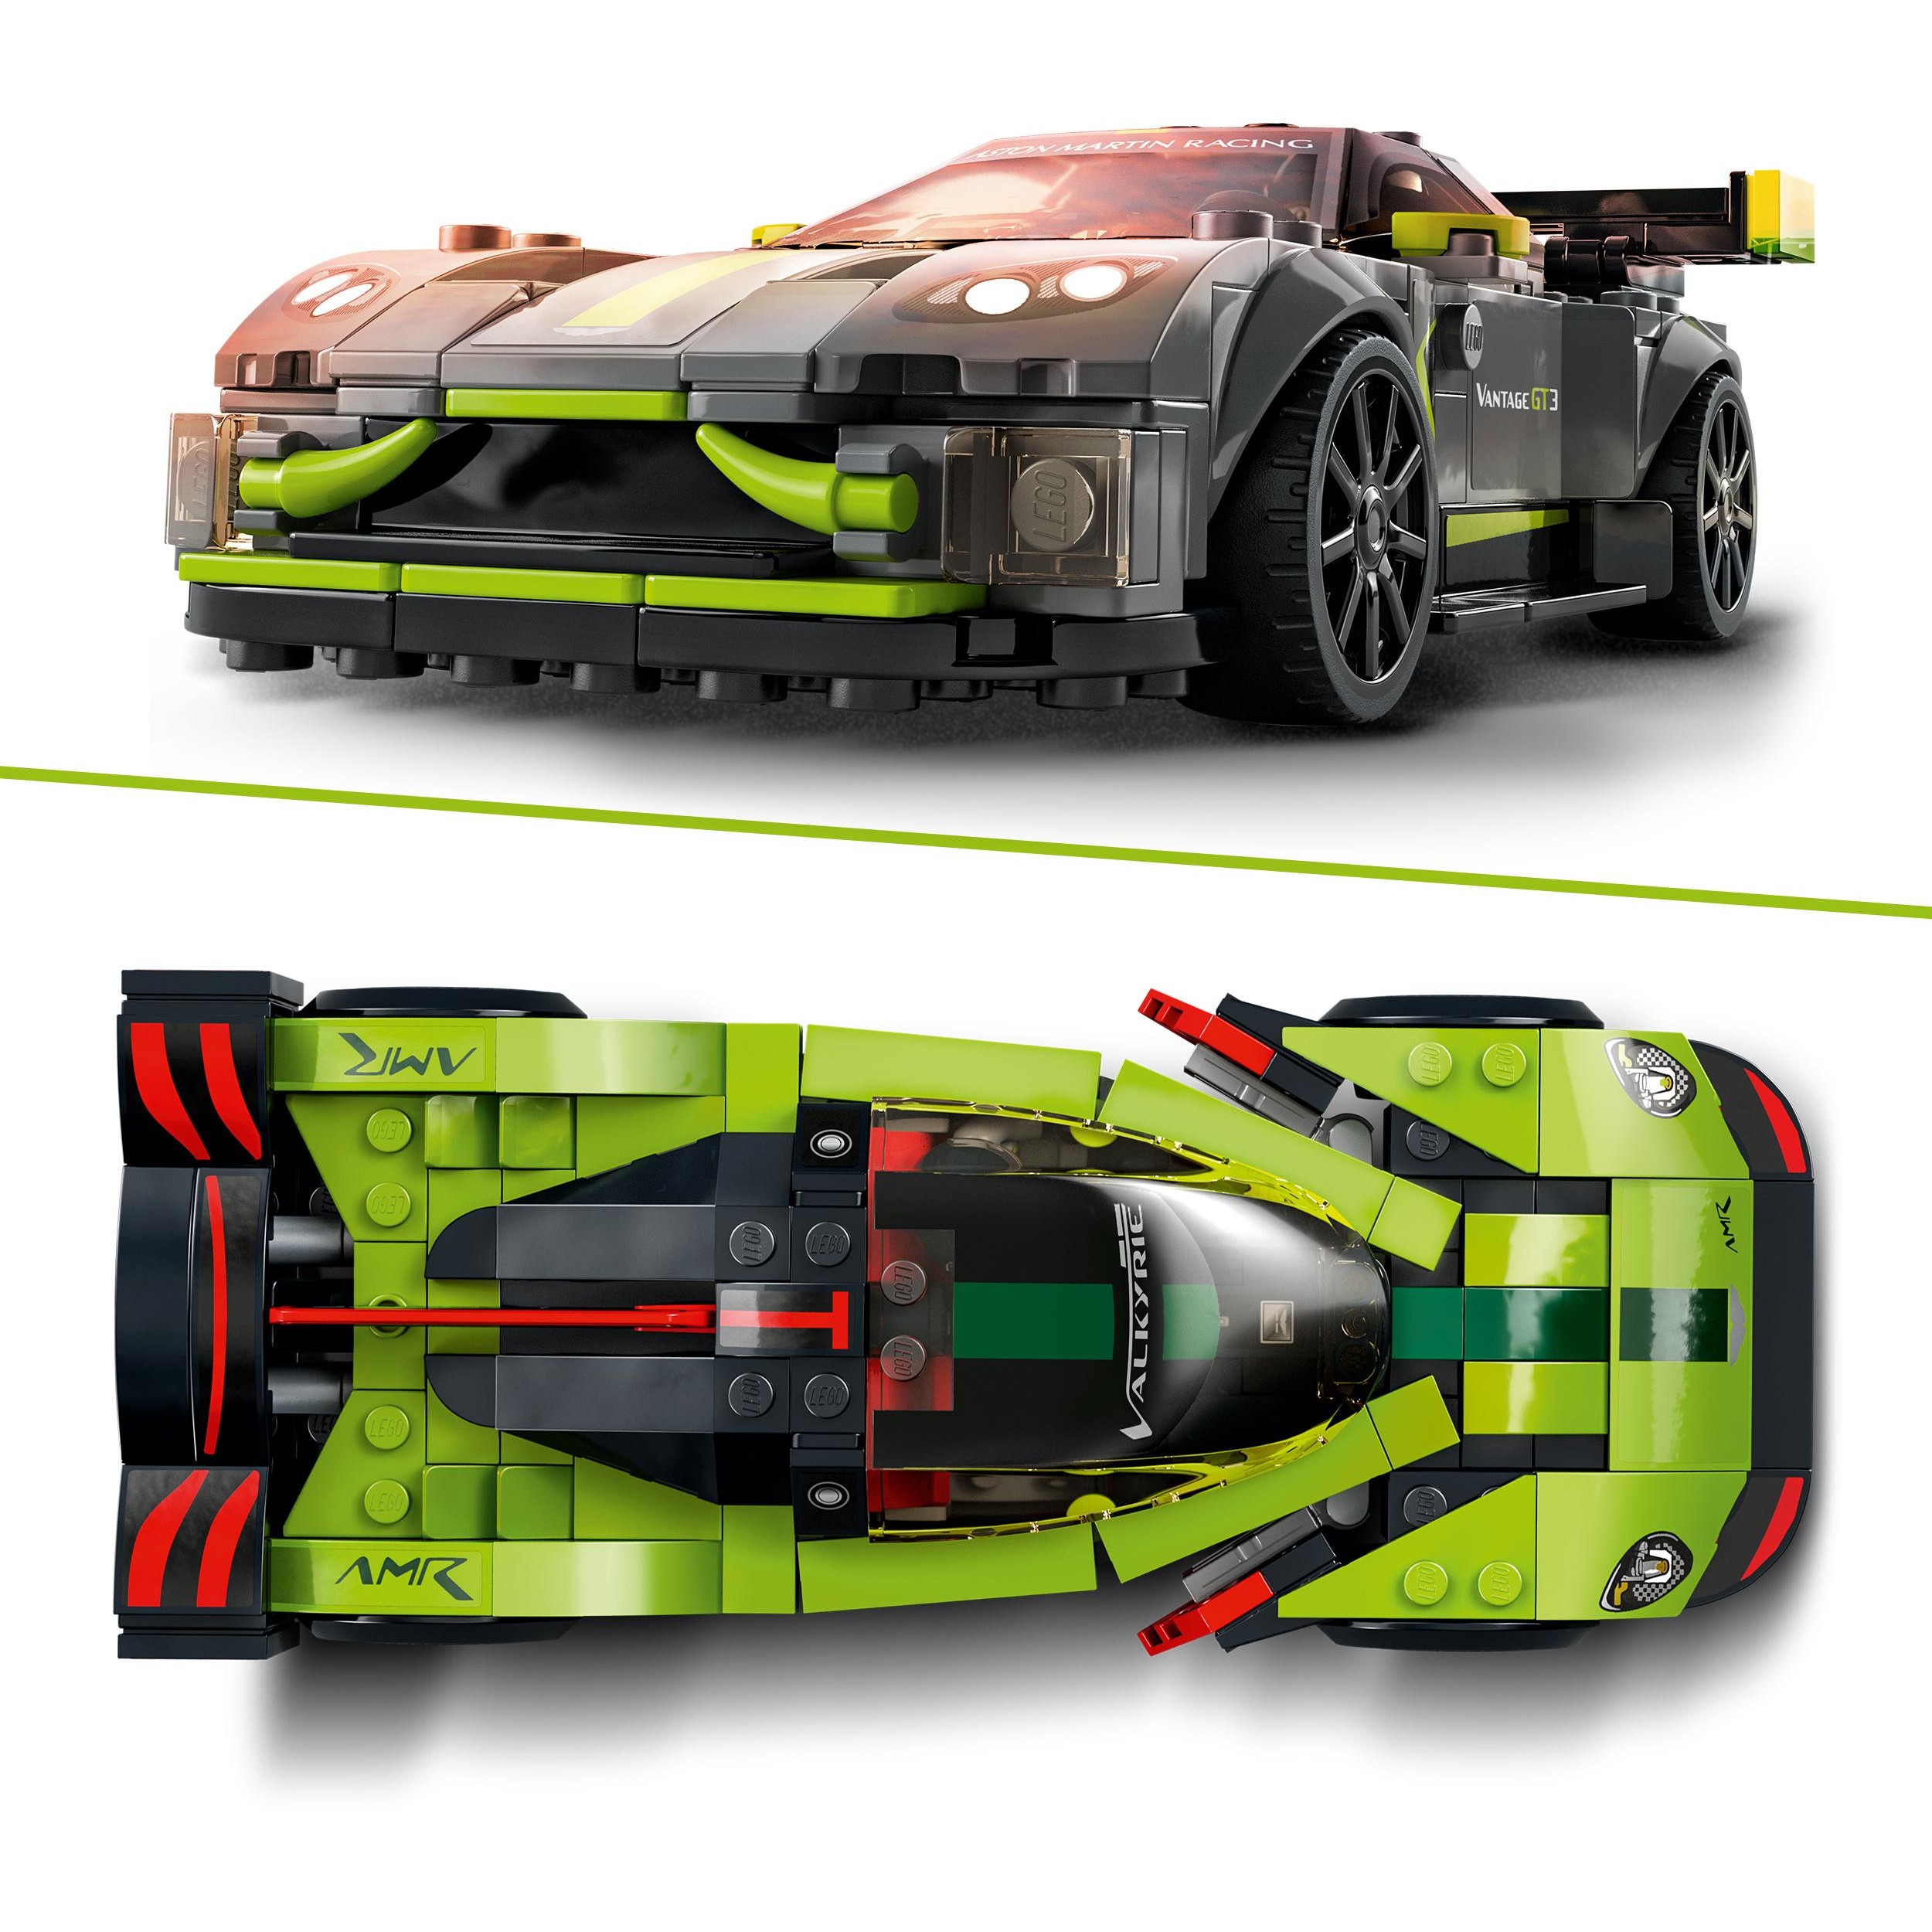 LEGO Speed Champions Aston Martin Valkyrie AMR Pro & Aston Martin Vantage GT3